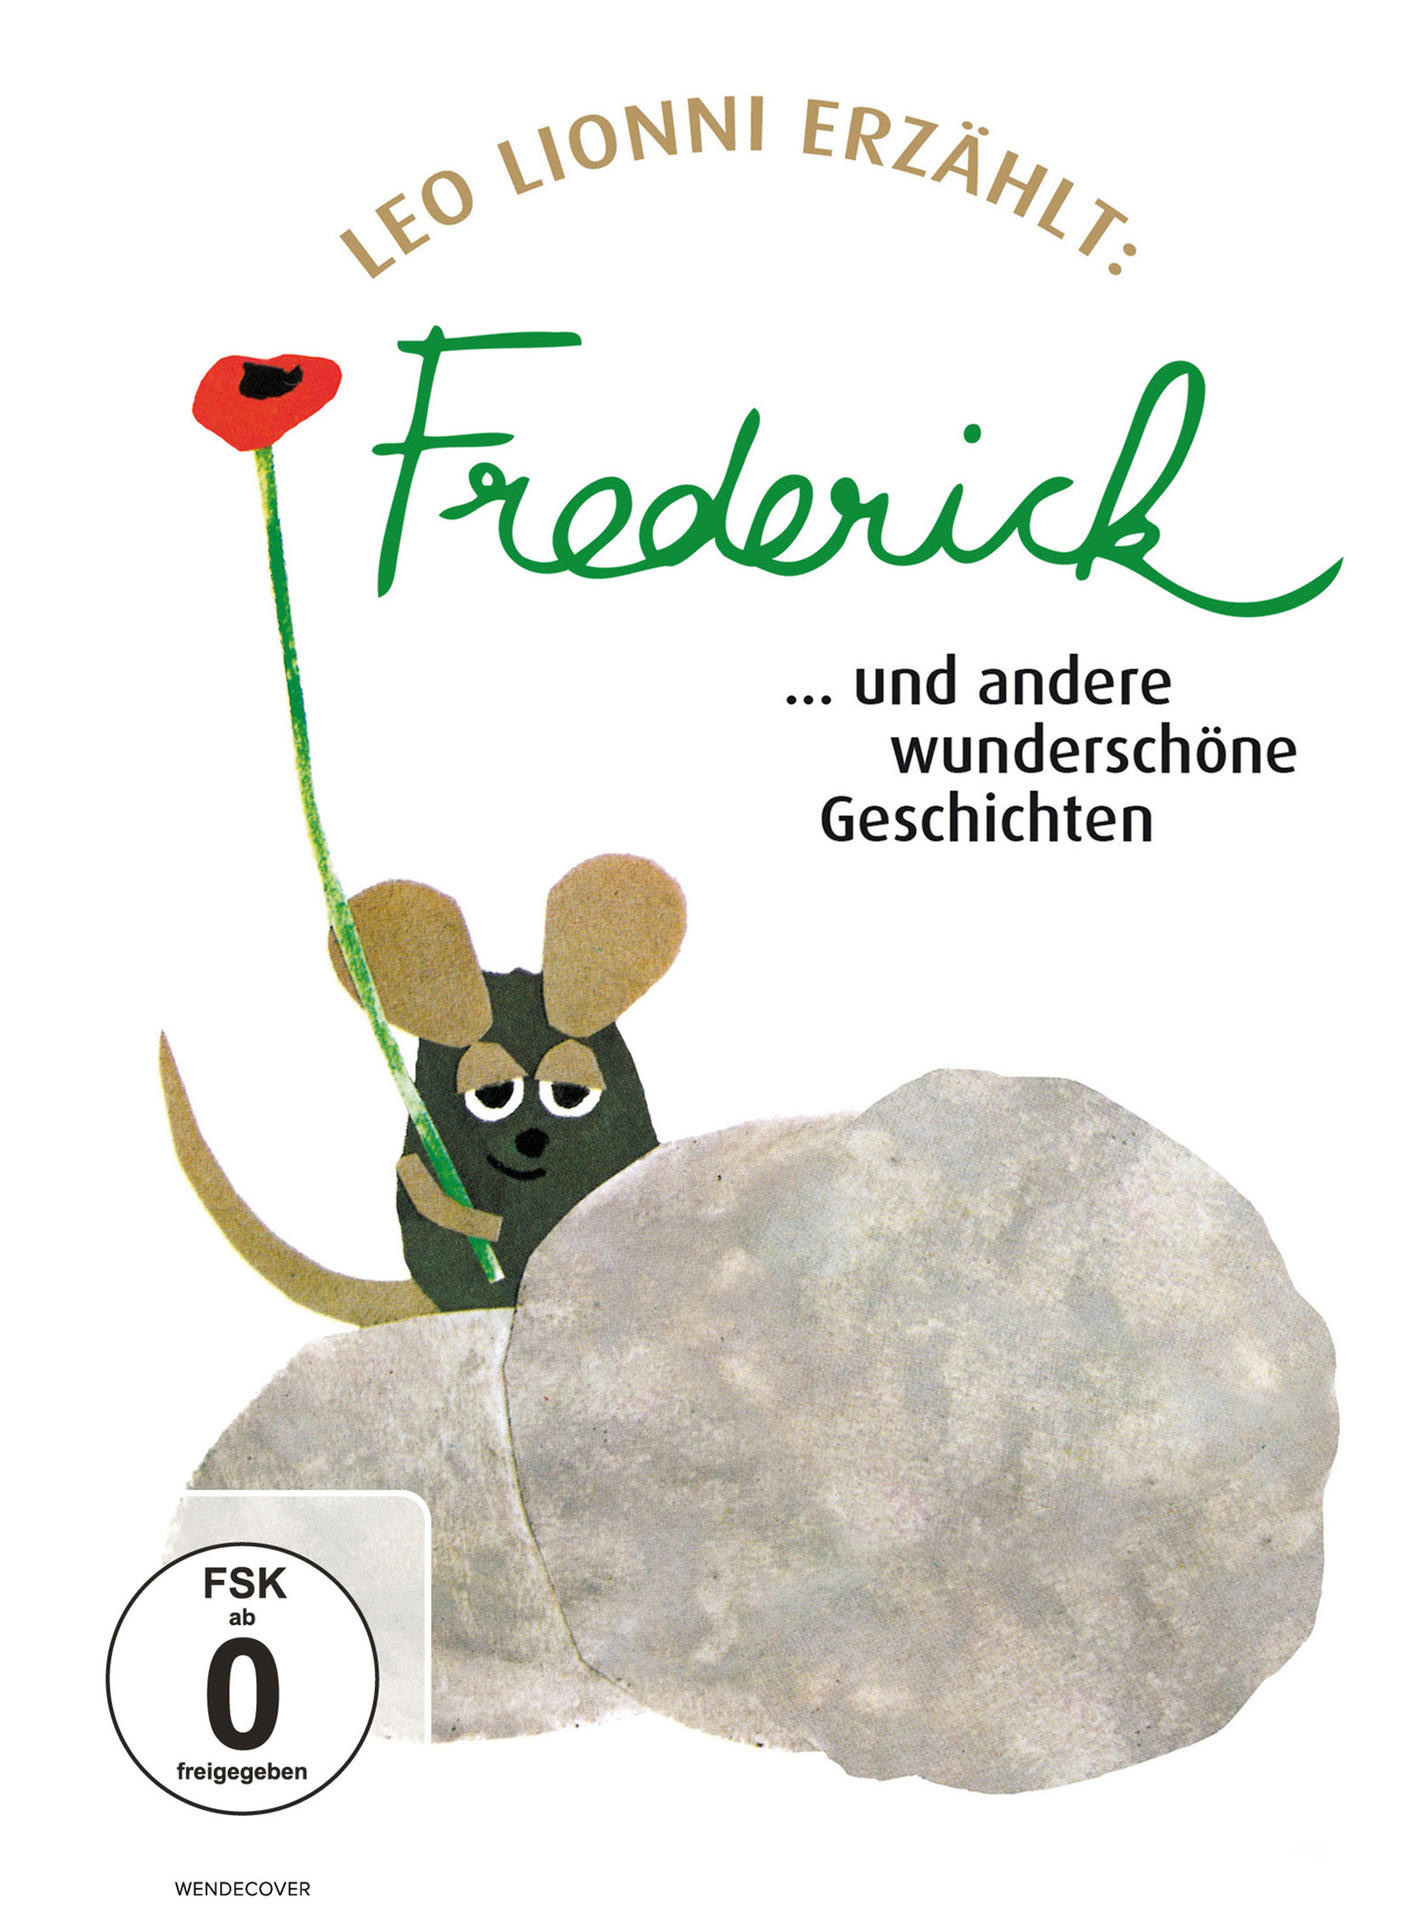 Geschichten und andere DVD Frederick... wunderschöne